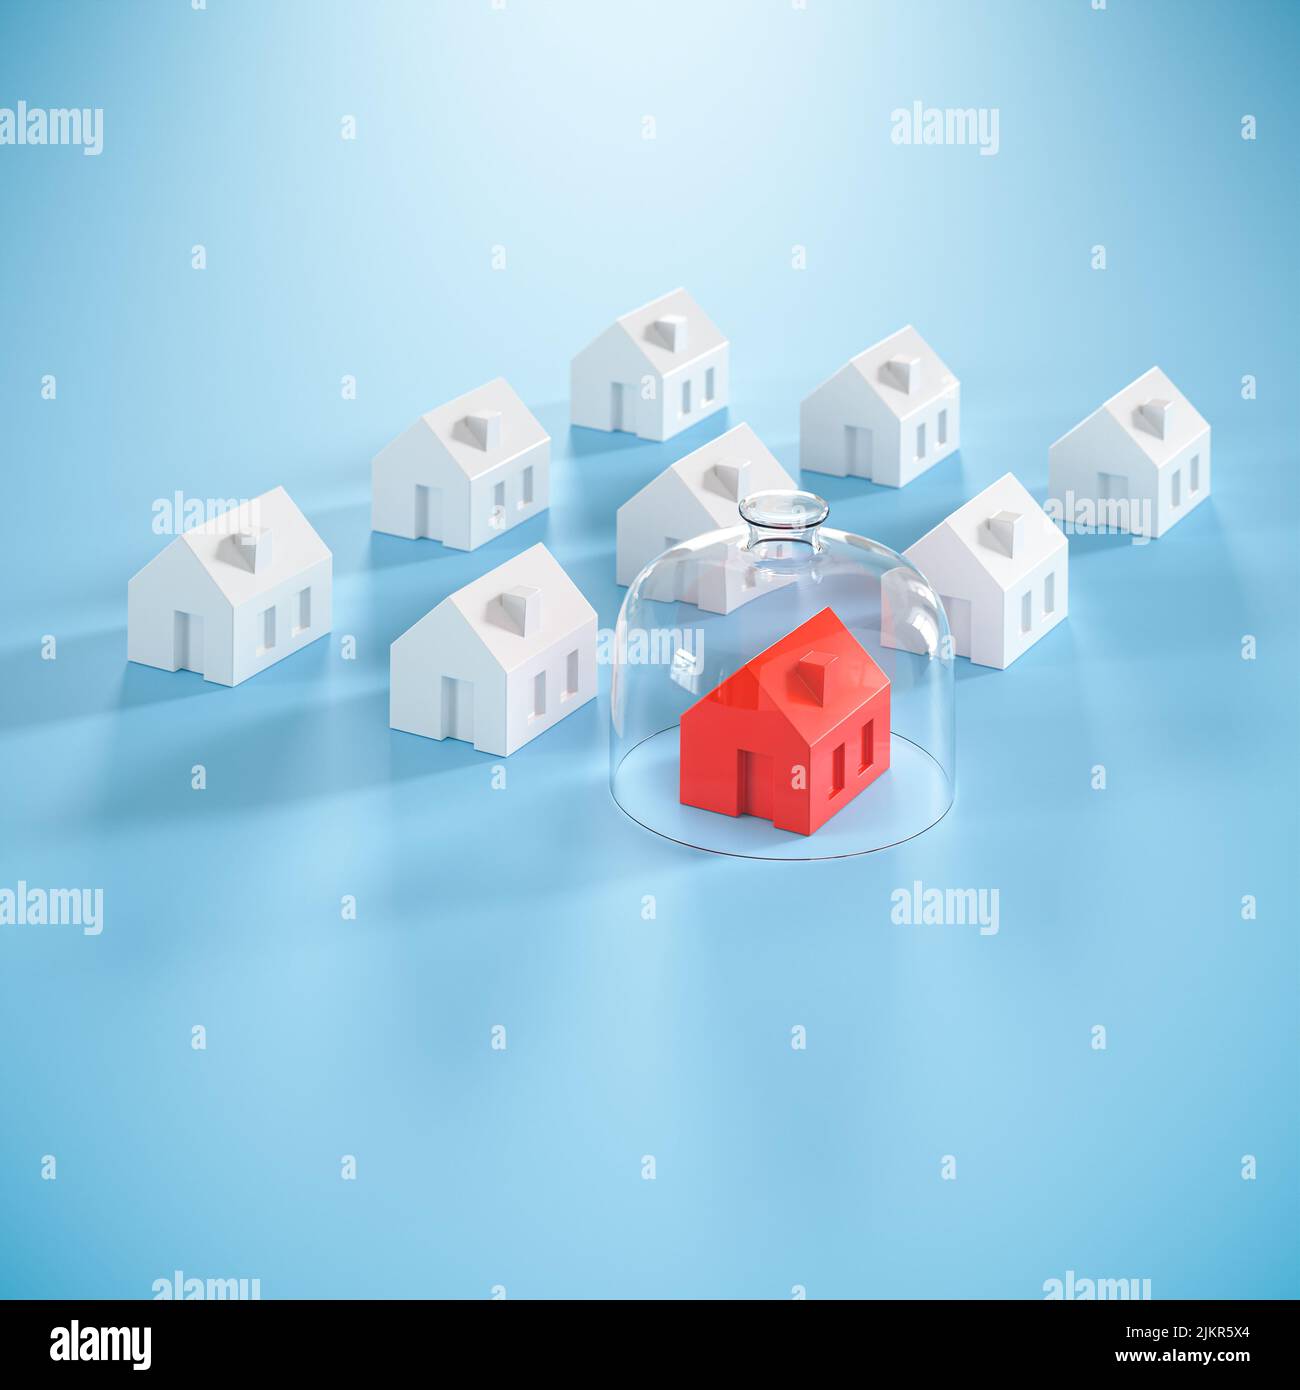 Propecting su concepto de la característica - seguro, vigilancia. Varias casas modelo, una de color rojo con una cúpula de vidrio. Foto de stock